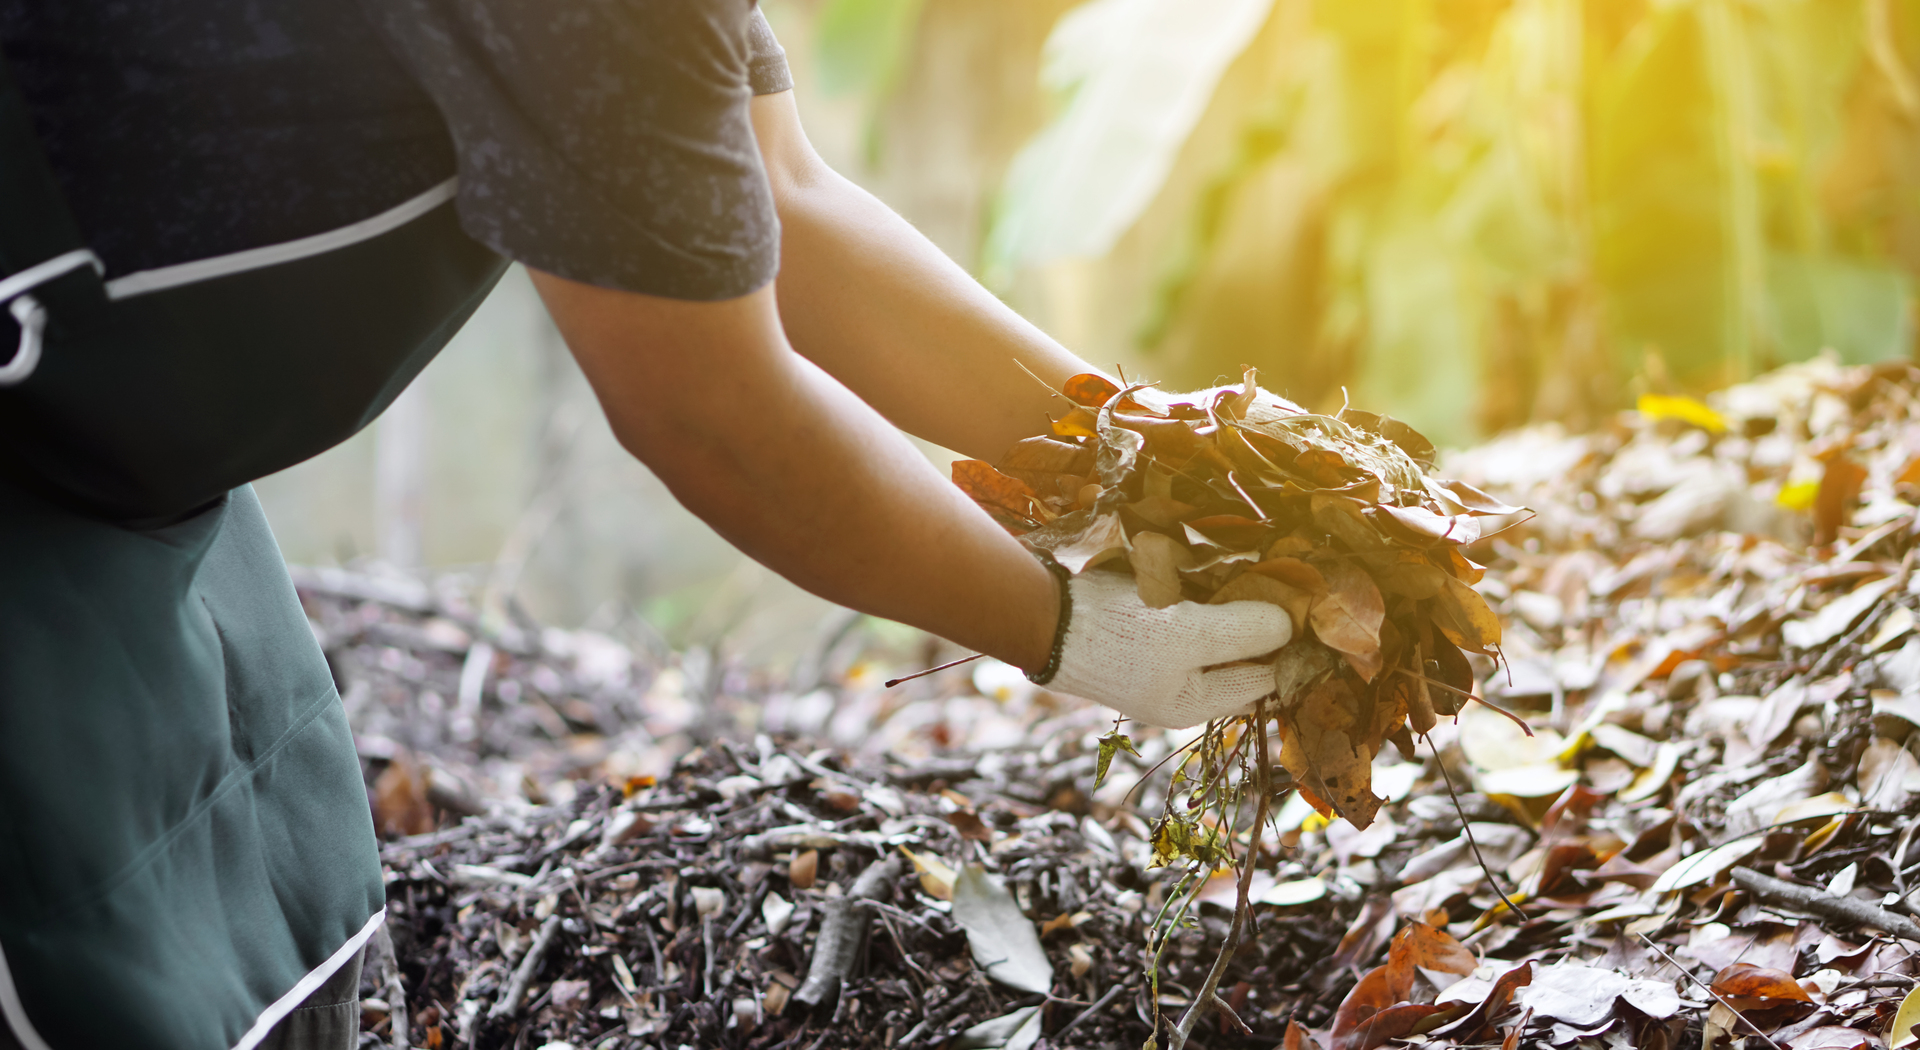 Na tym obrazku widzimy proces kompostowania liści, gdzie sterta zrzuconych liści została starannie ułożona na ziemi, tworząc naturalną kompozycję. Pod wpływem czasu i mikroorganizmów, liście stopniowo rozkładają się, przekształcając się w bogaty, czarny kompost. Ta grafika ilustruje znaczenie kompostowania liści jako efektywnej metody recyklingu organicznych odpadów, która przyczynia się do tworzenia wartościowej i odżywczej ziemi dla roślin oraz utrzymania równowagi w ekosystemie